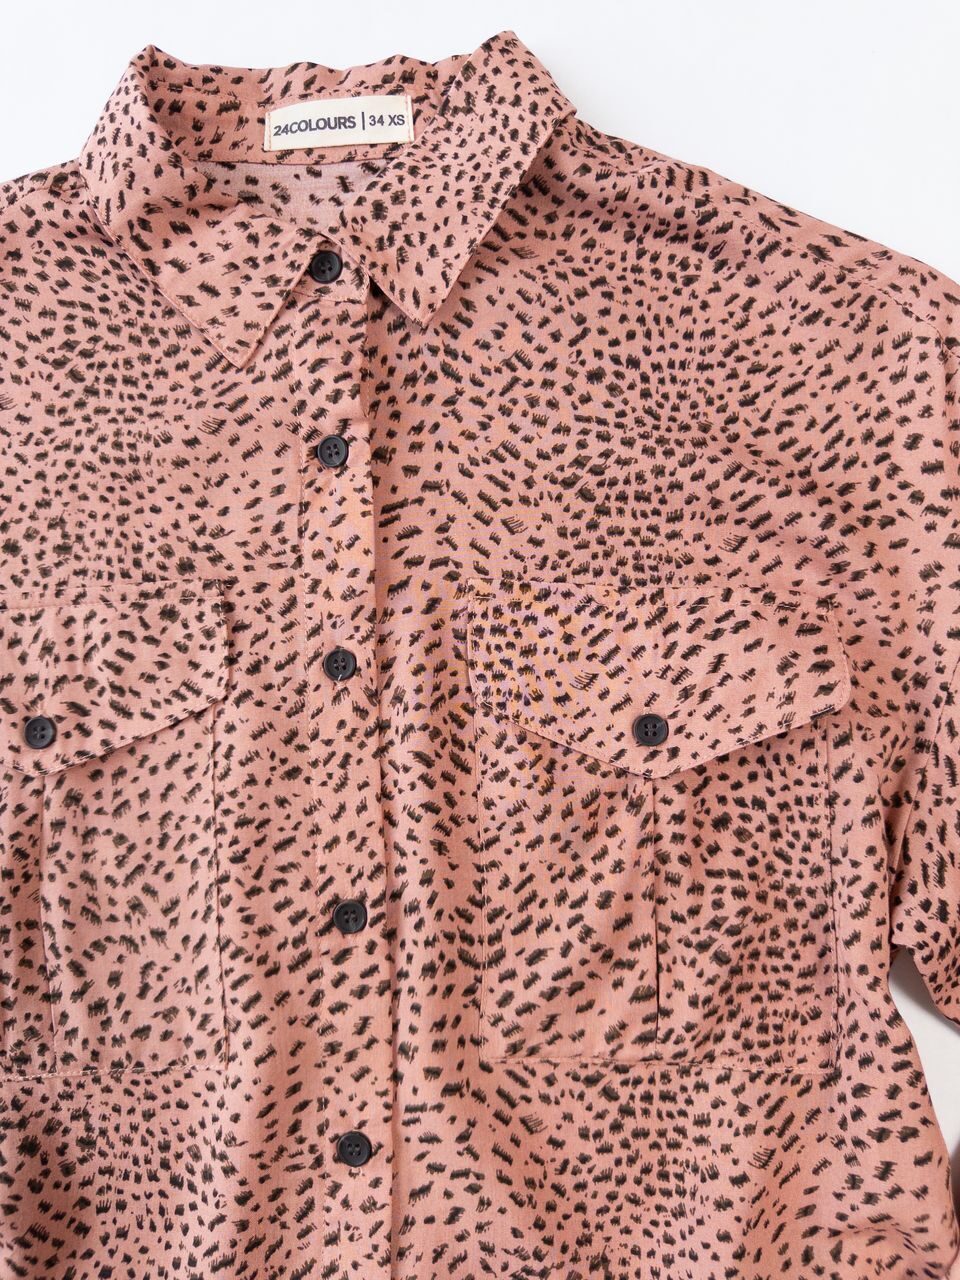 Блуза-рубашка укороченная, сзади в поясе резинка цвет персиковый/узор размер EUR 34 XS (rus 40-42) 24colours